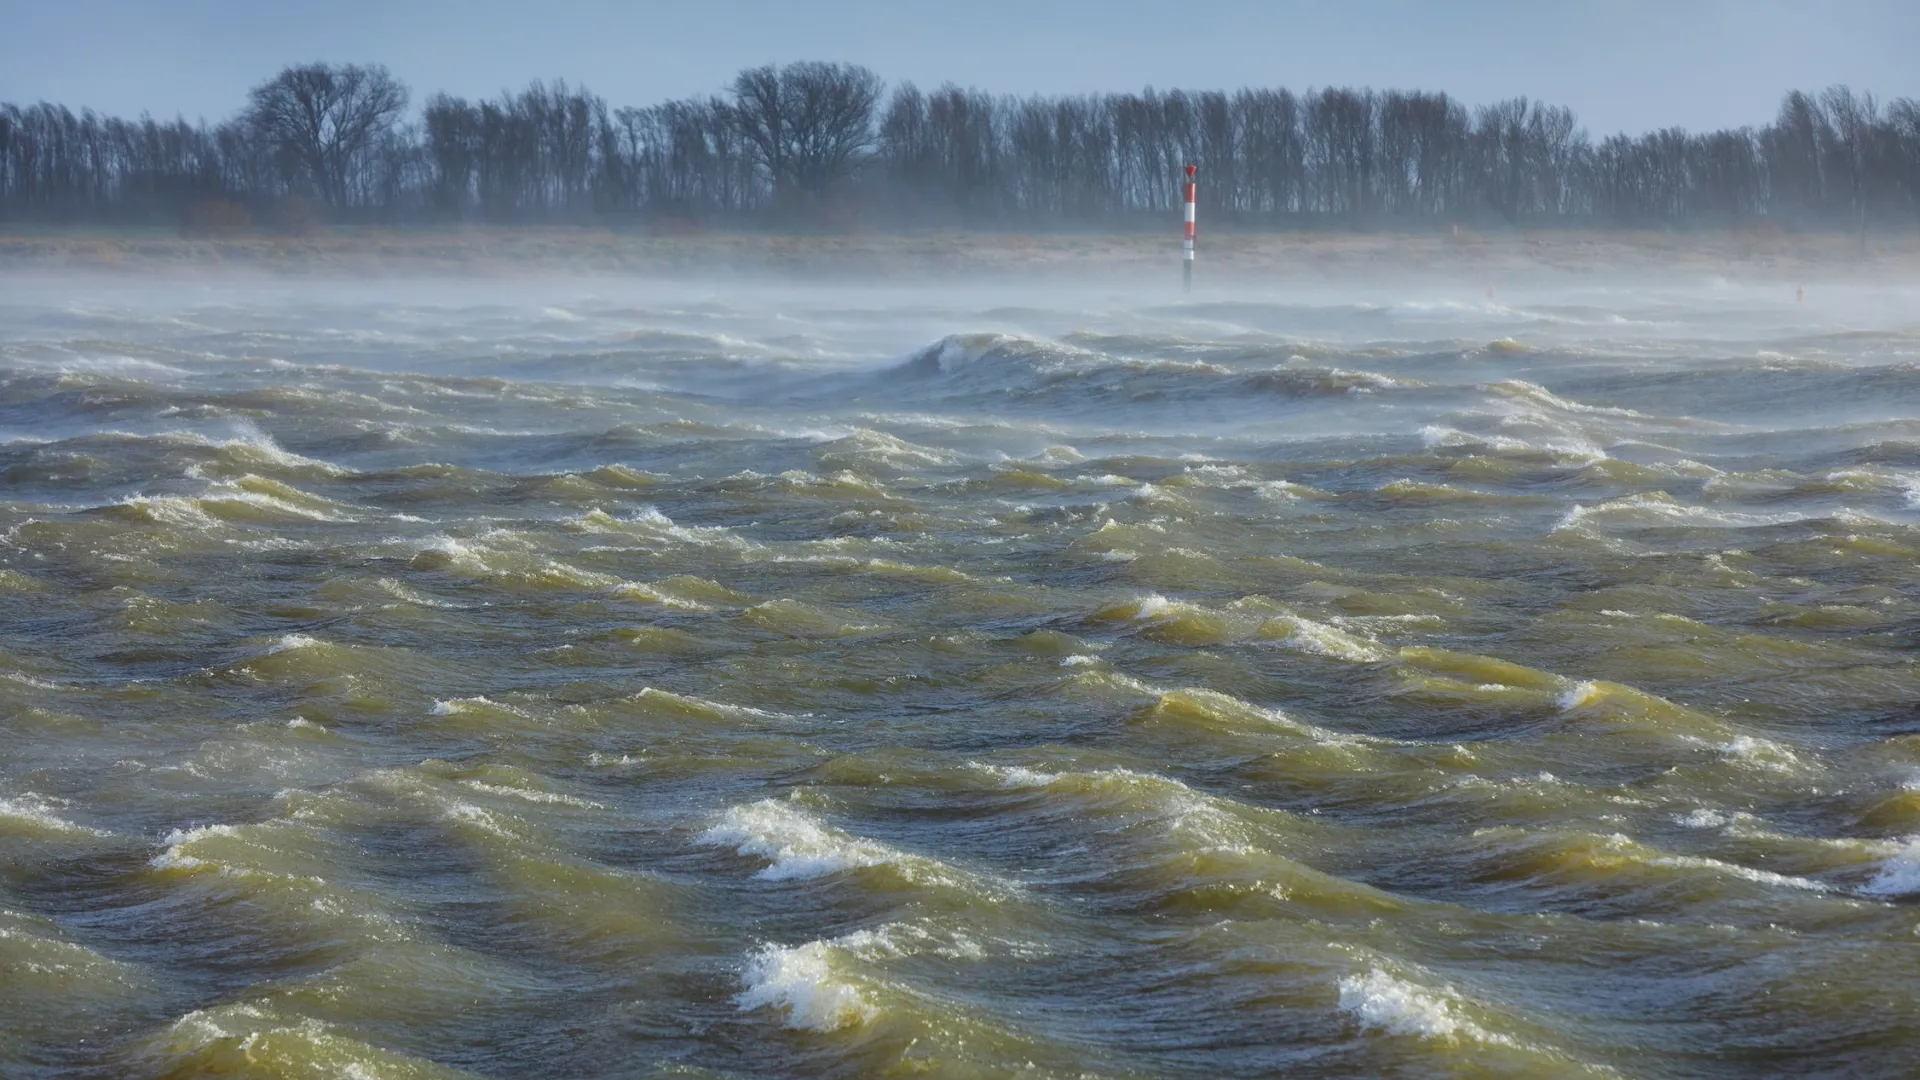 На Курган надвигается масштабный паводок. Фото: R. de Bruijn_Photography / Shutterstock / Fotodom